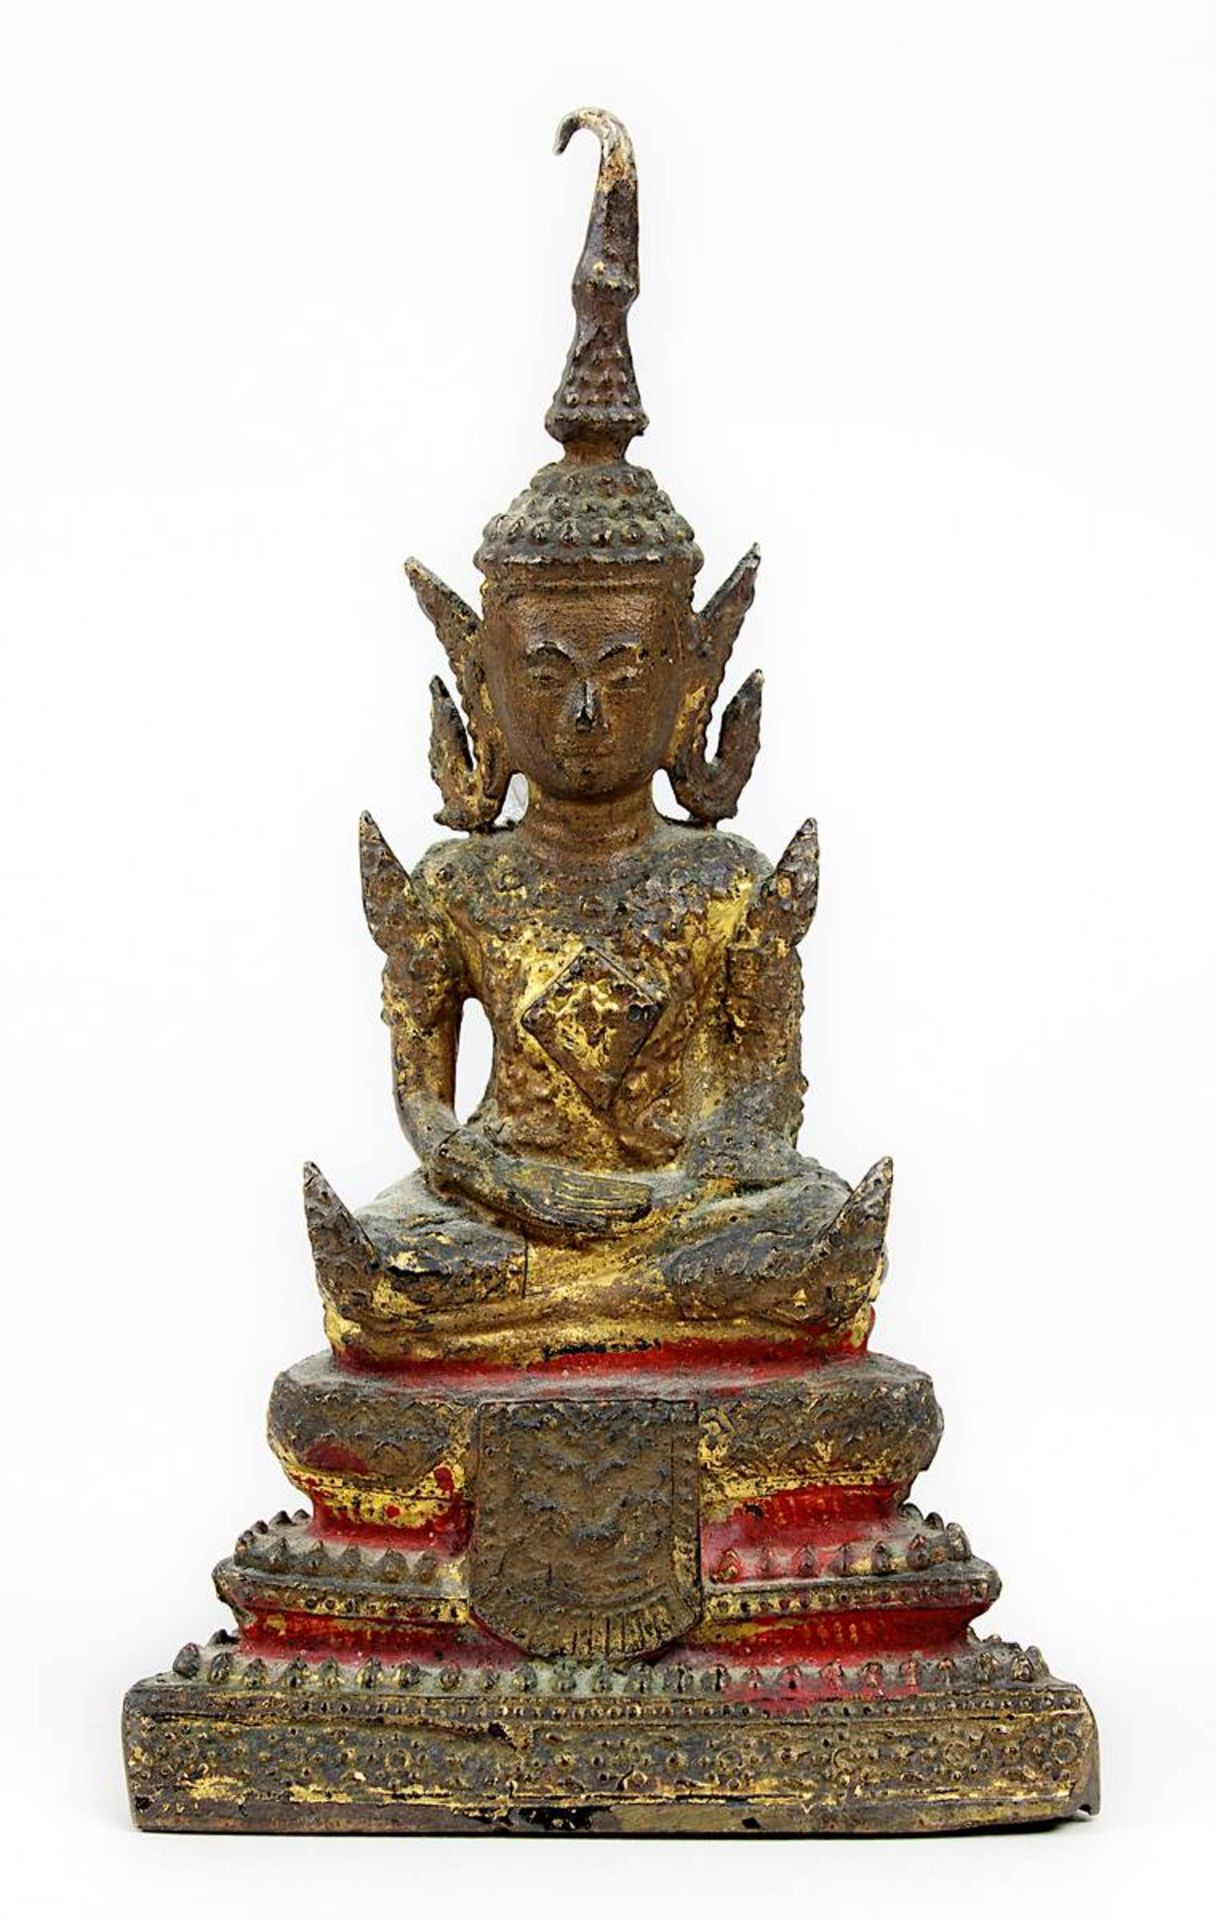 Siamesischer Bronze-Buddha, 19. Jh., Bronzekorpus, Guss in verlorener Form, meditierender Mönch im